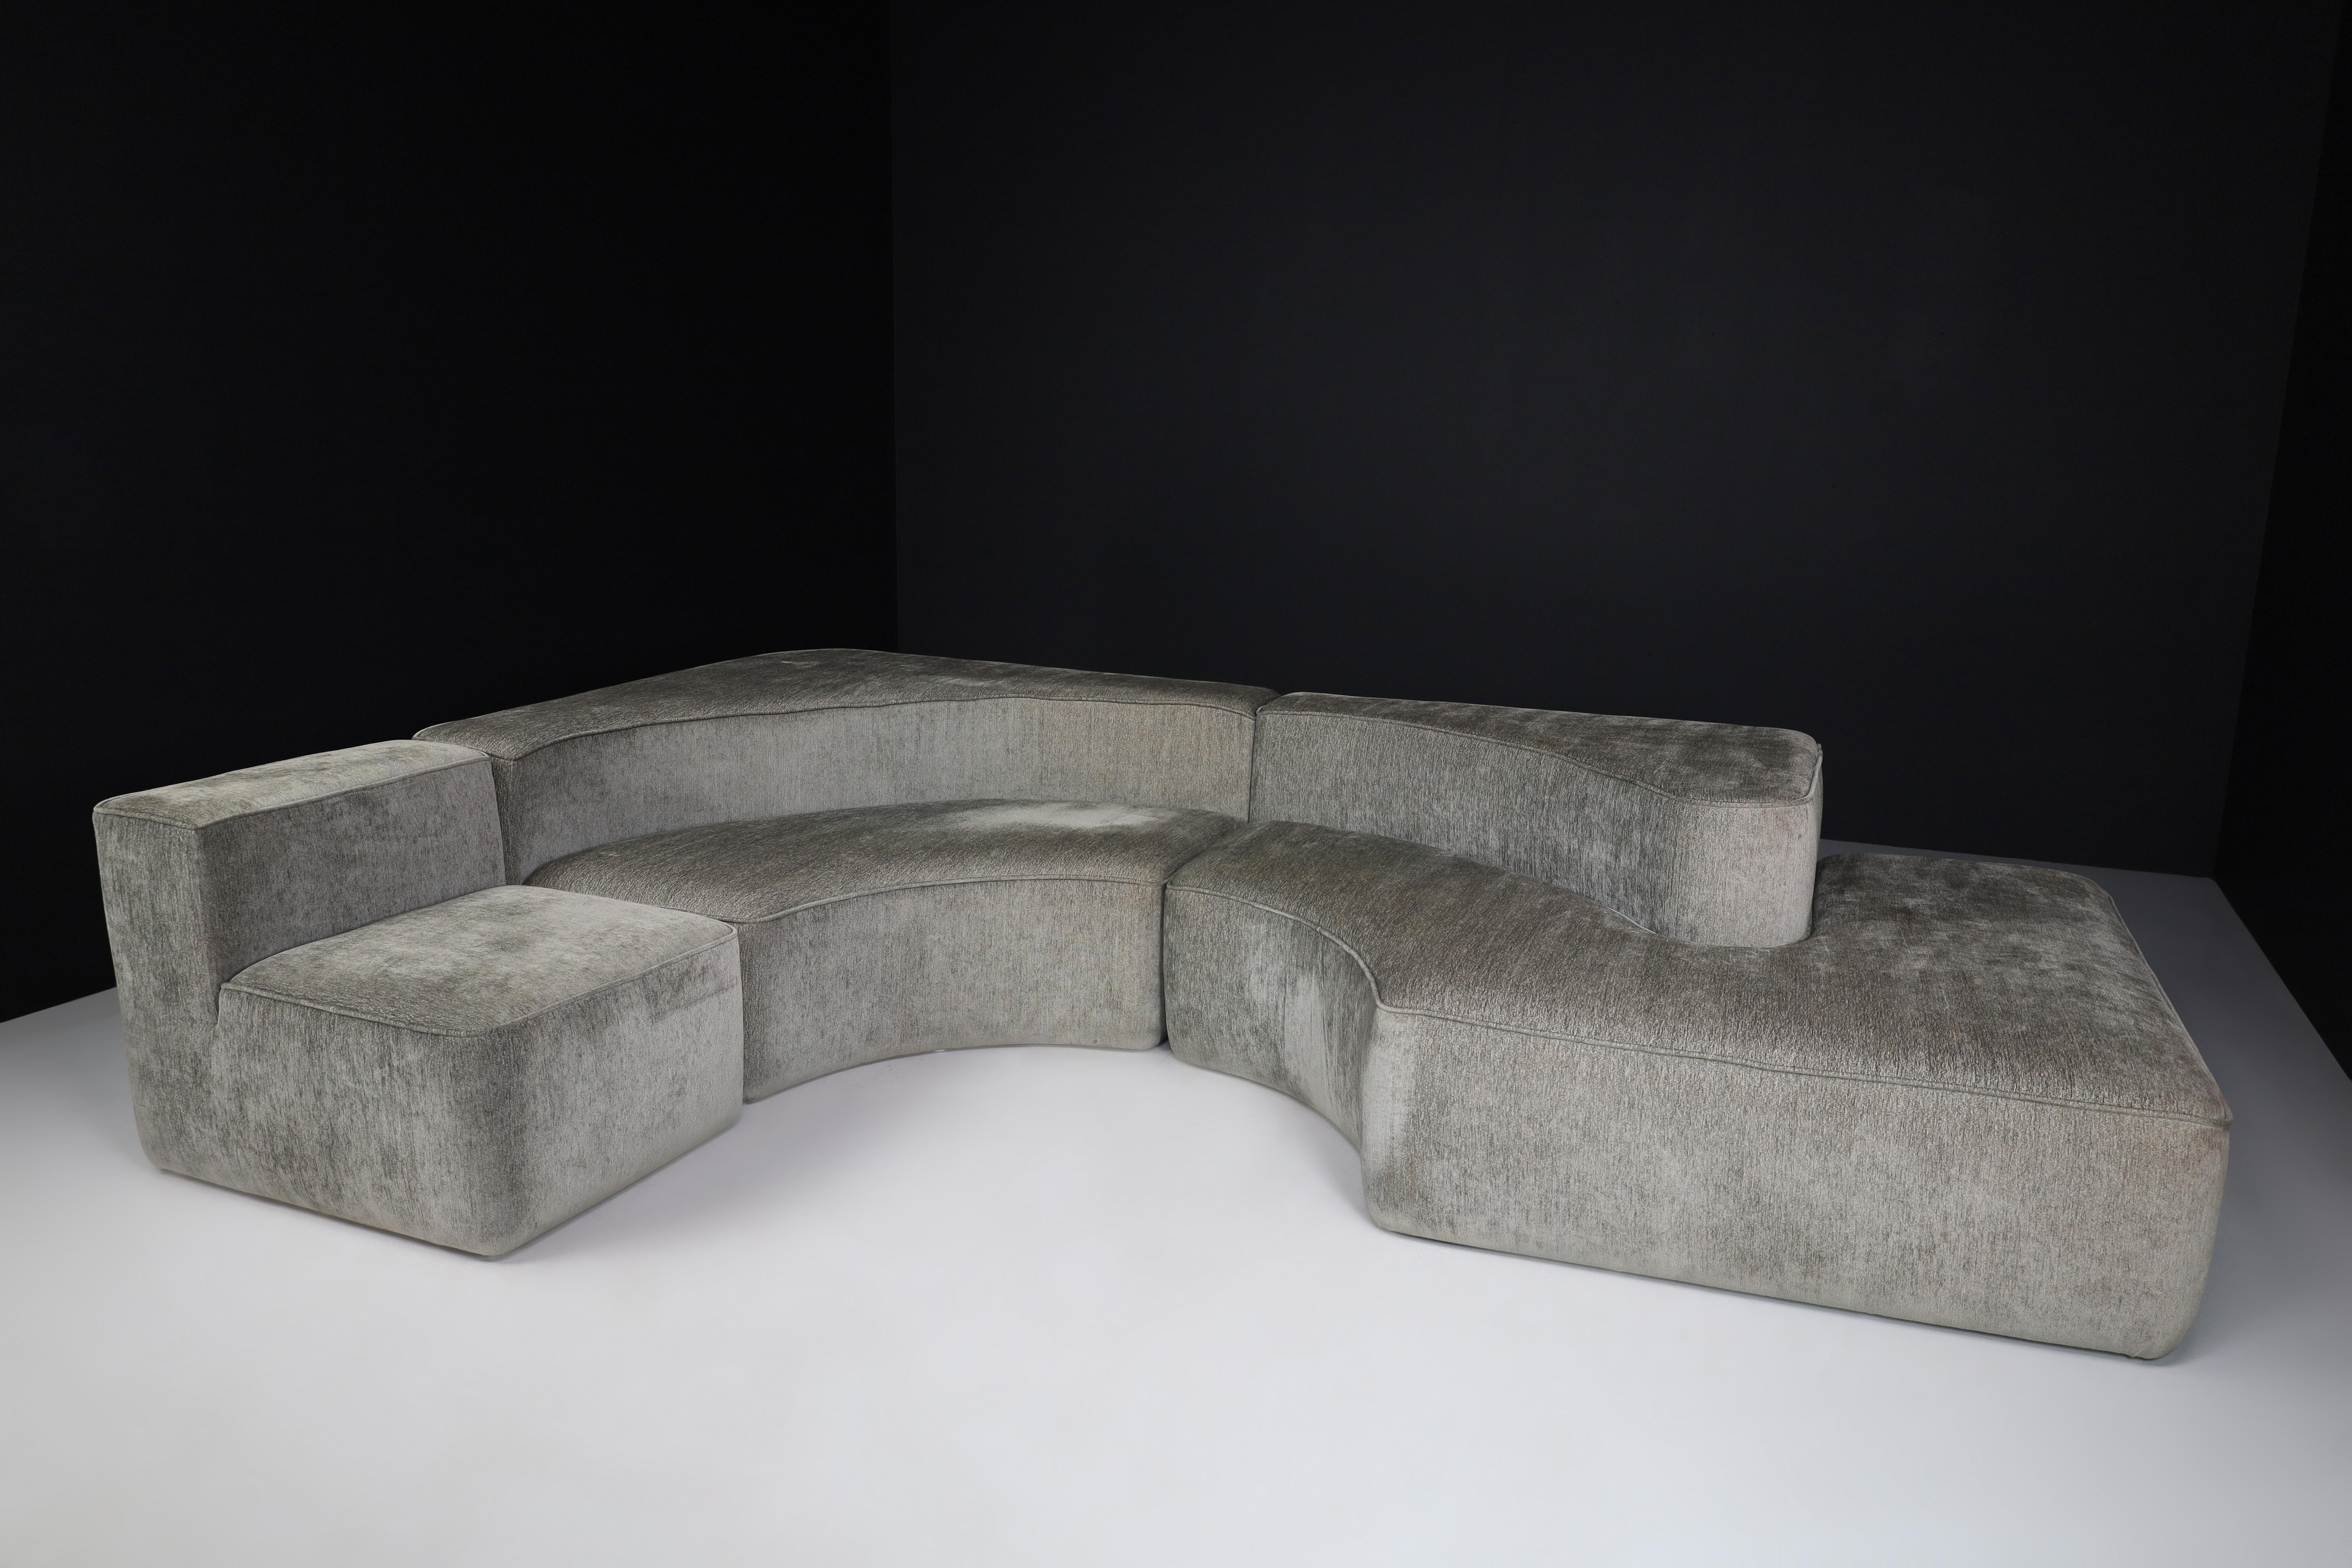 Italienisches modulares Sofa im Stil von Pamio, Massari & Toso für Stillwood, Italien, 1970er Jahre

Italienisches Modulsofa im Stil von Pamio, Massari & Toso (Designer) für Stillwood (Hersteller), die dafür bekannt waren, nach der Entwicklung der